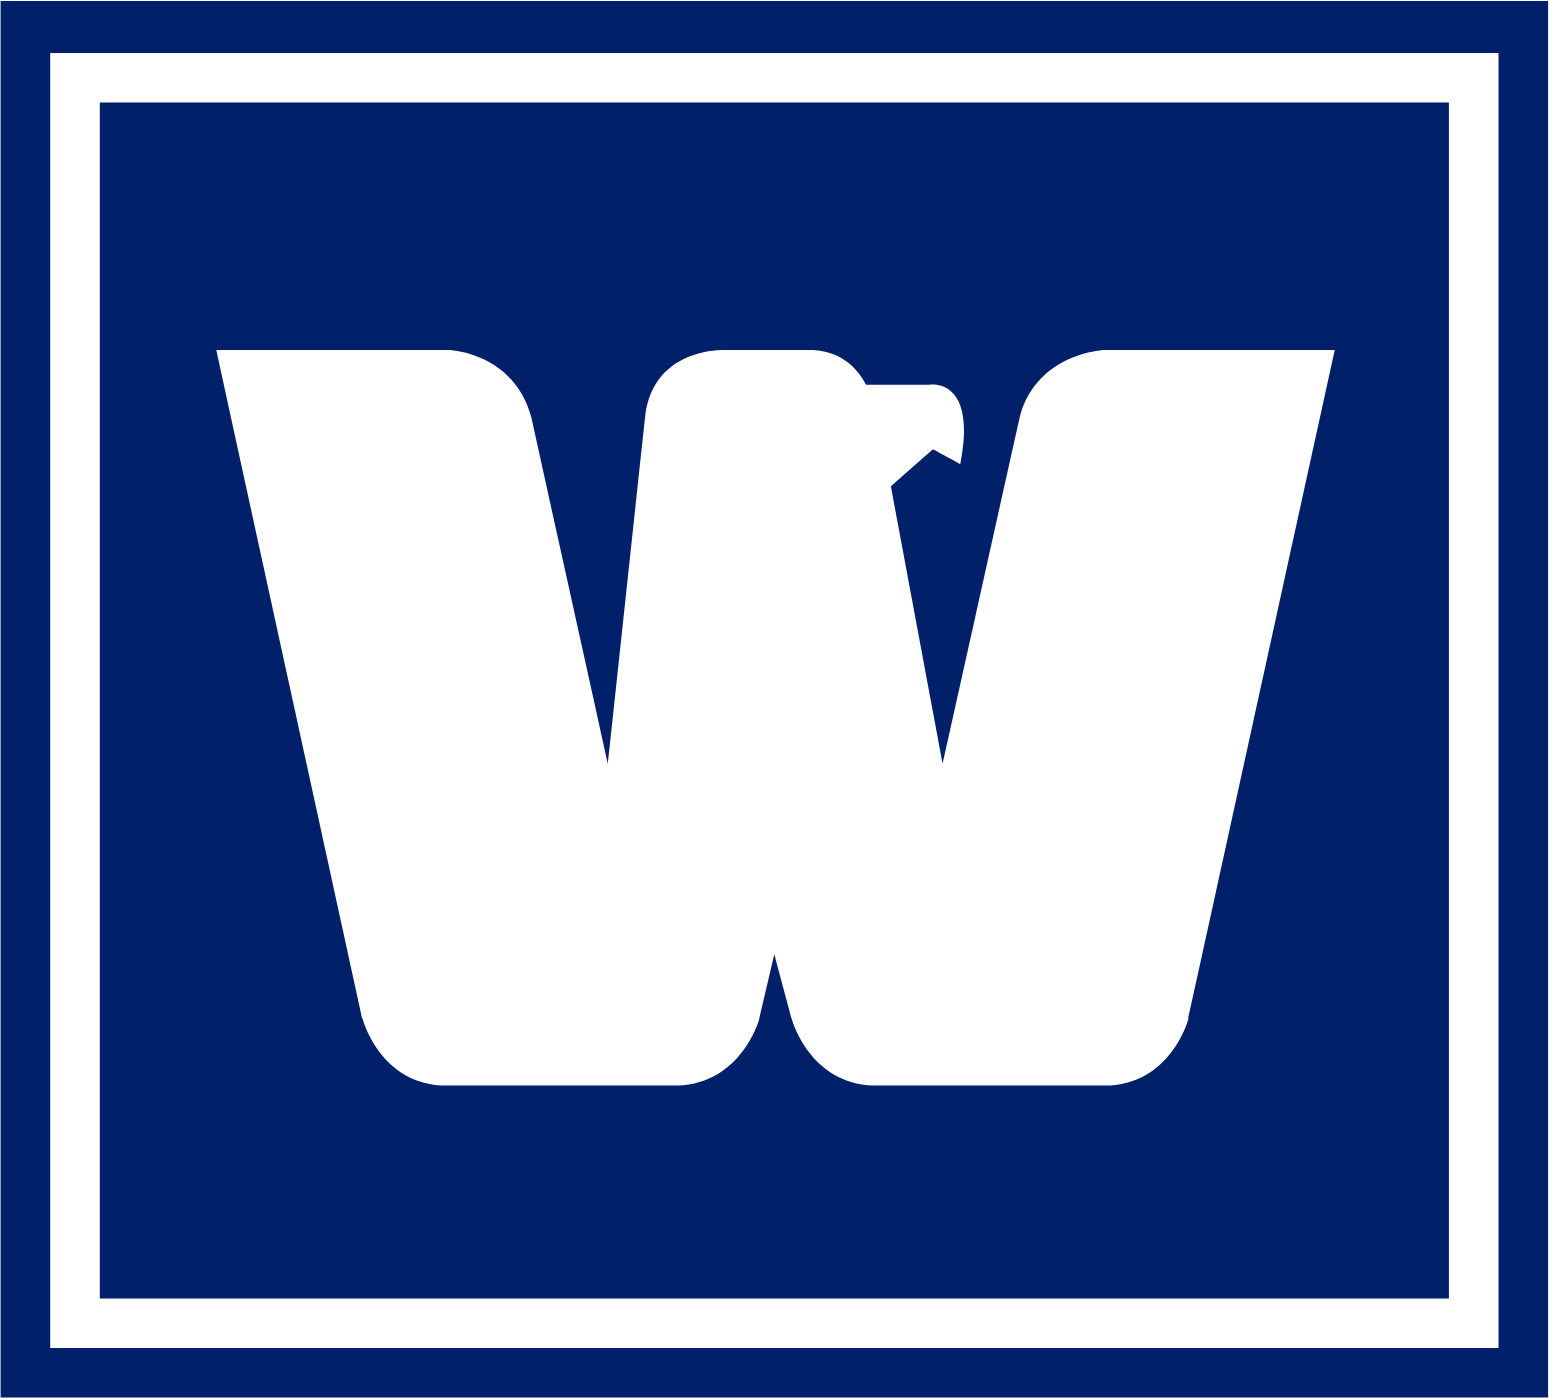 West Bancorporation logo (transparent PNG)